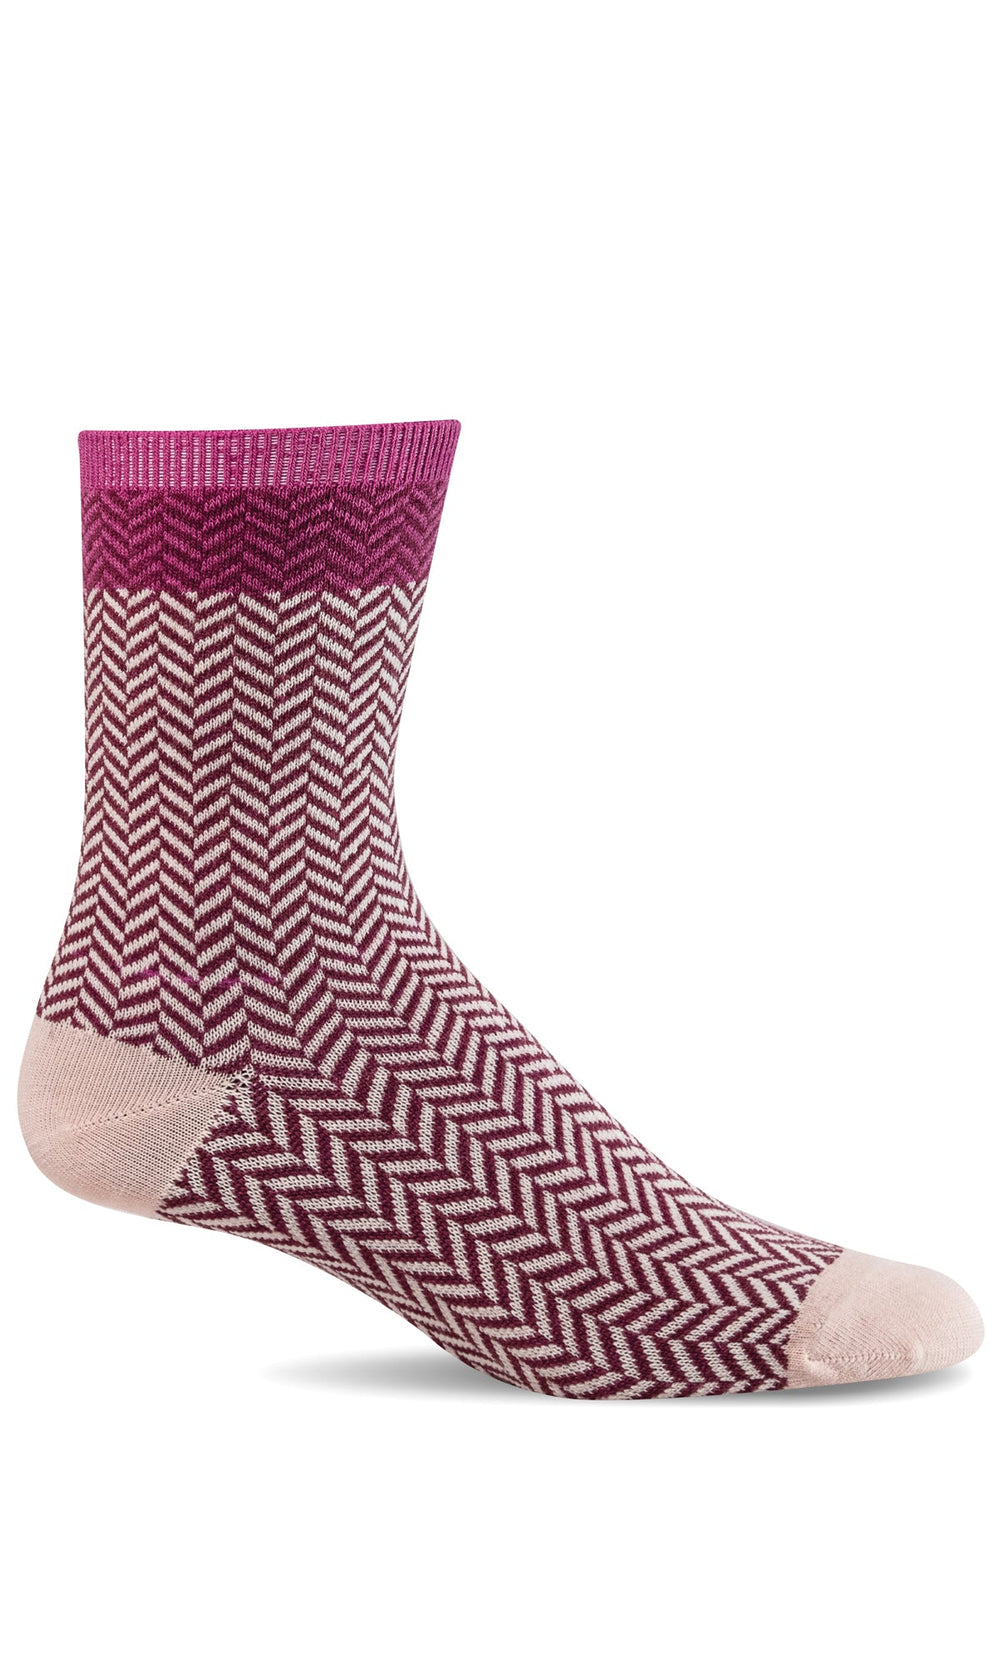 Sockwell Herringbone Tweed Essential Comfort Socks (Women's)